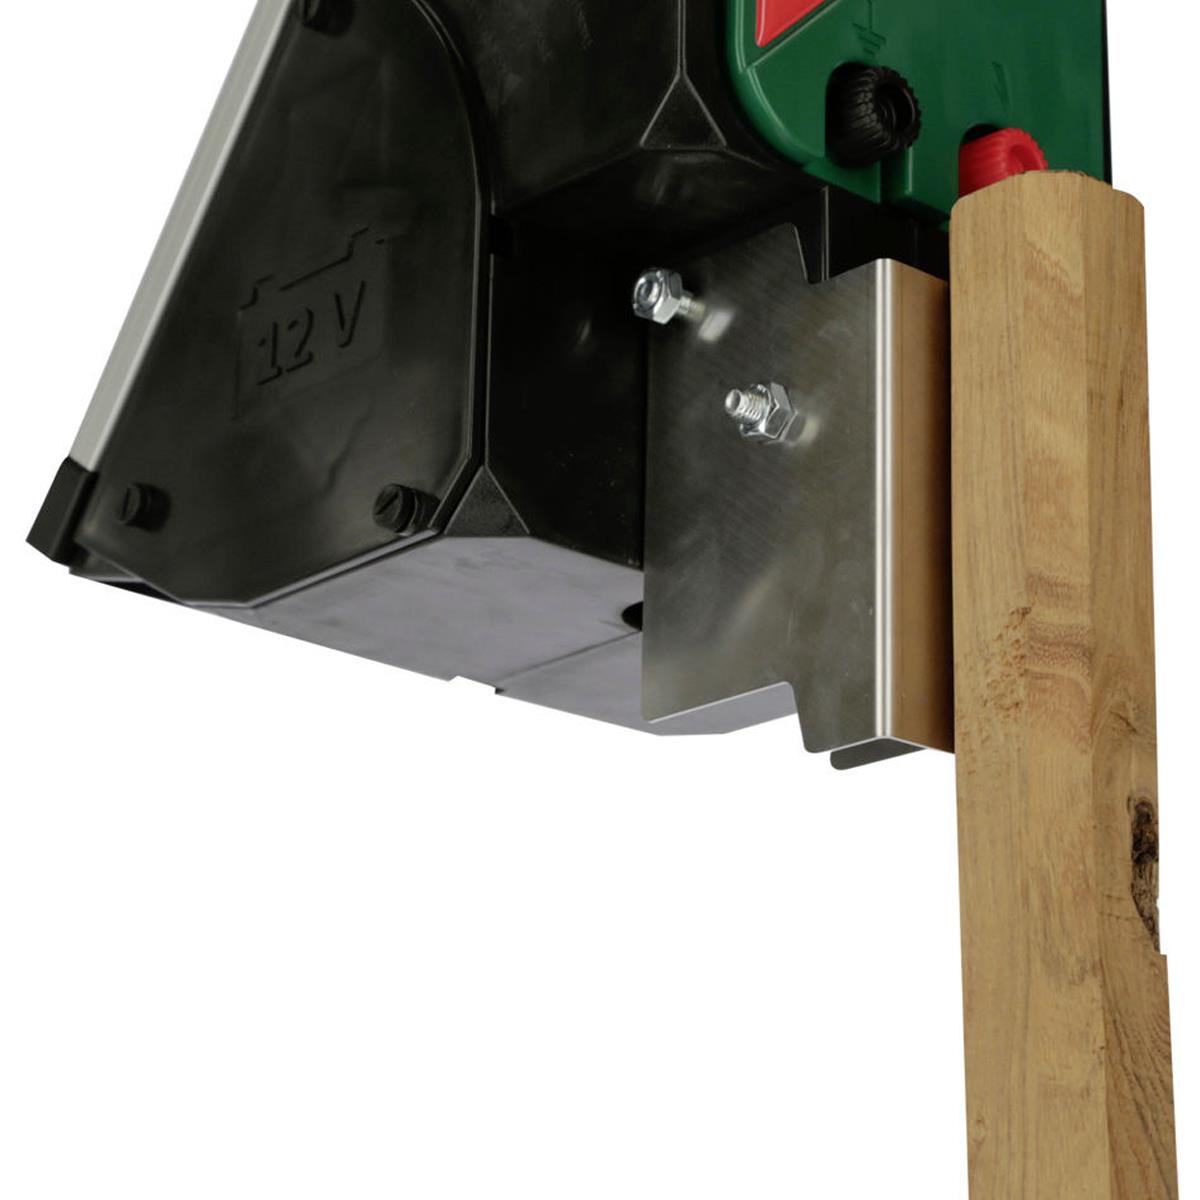 Wooden post holder for Sun Power energisers